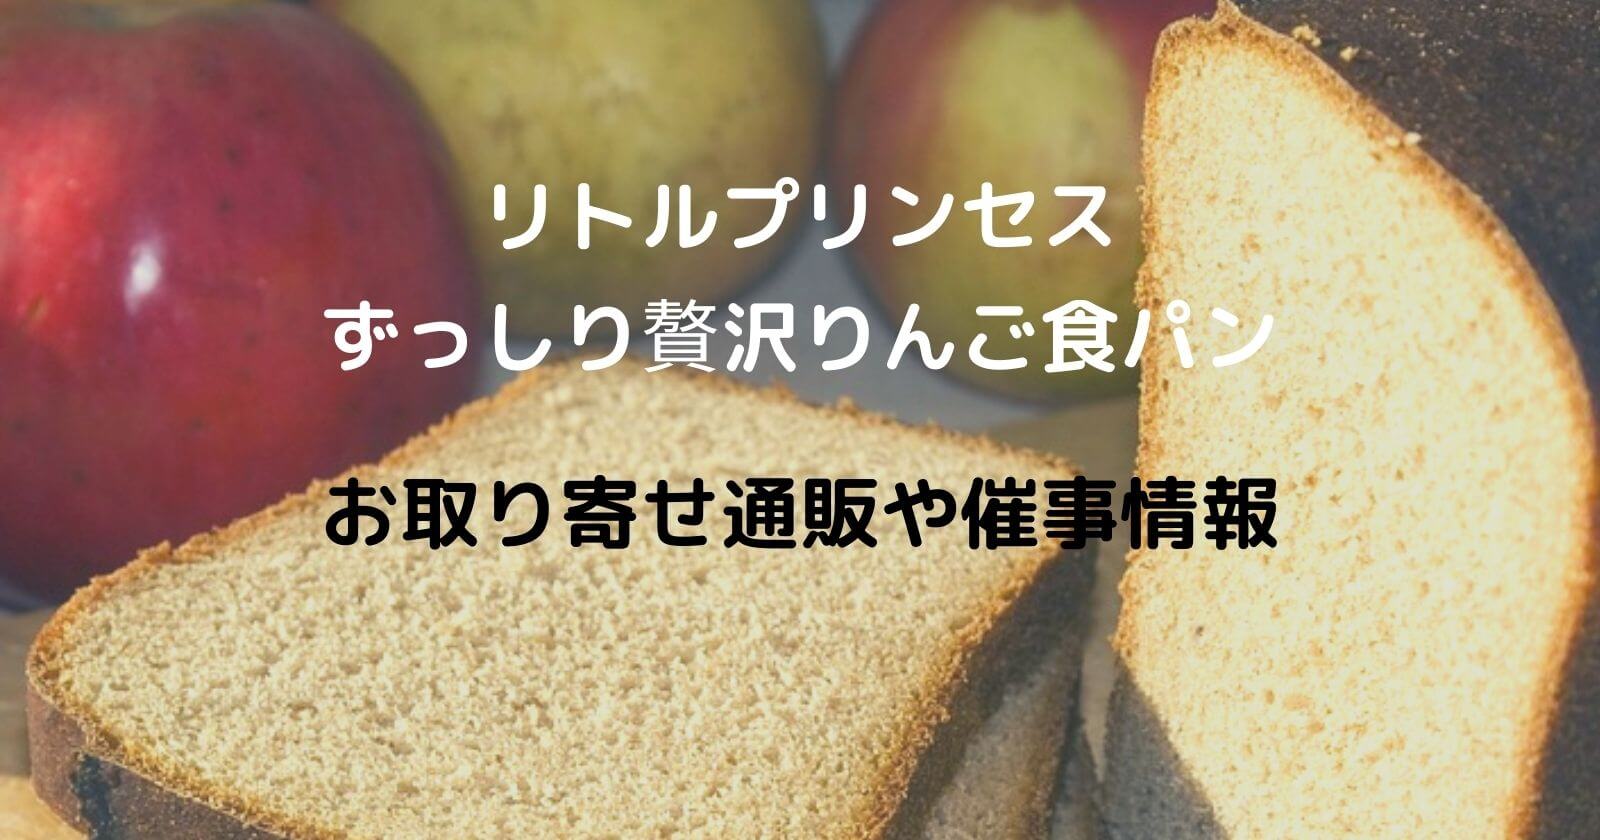 リトルプリンセス「ずっしり贅沢りんごパン」のお取り寄せ通販や催事情報